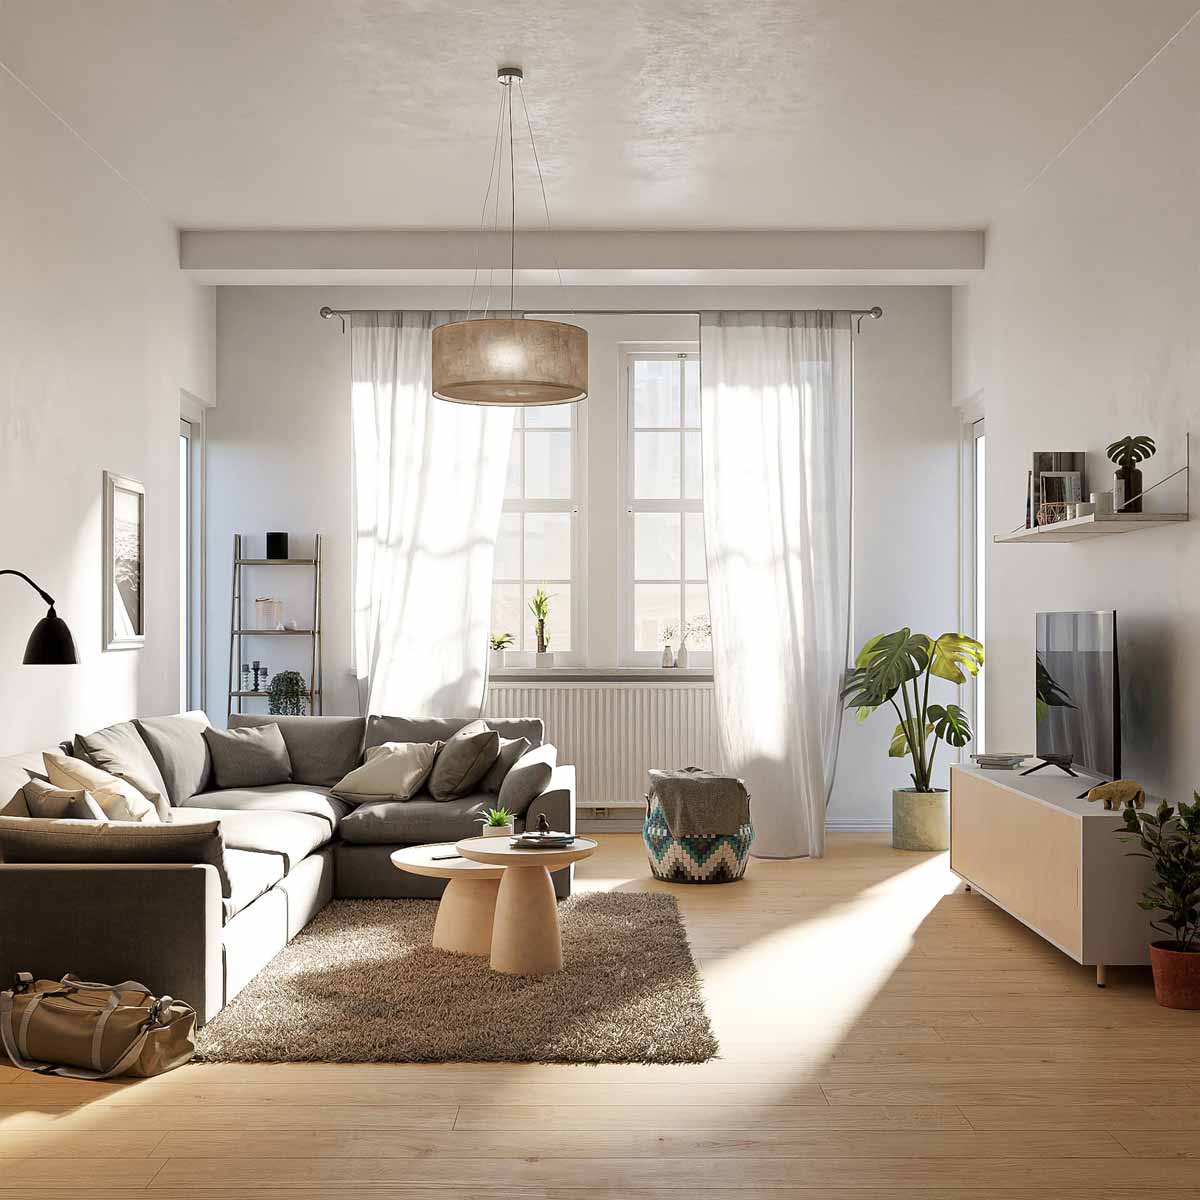 Có nên làm nội thất để cho thuê chung cư? Nguồn: blenderartists.org